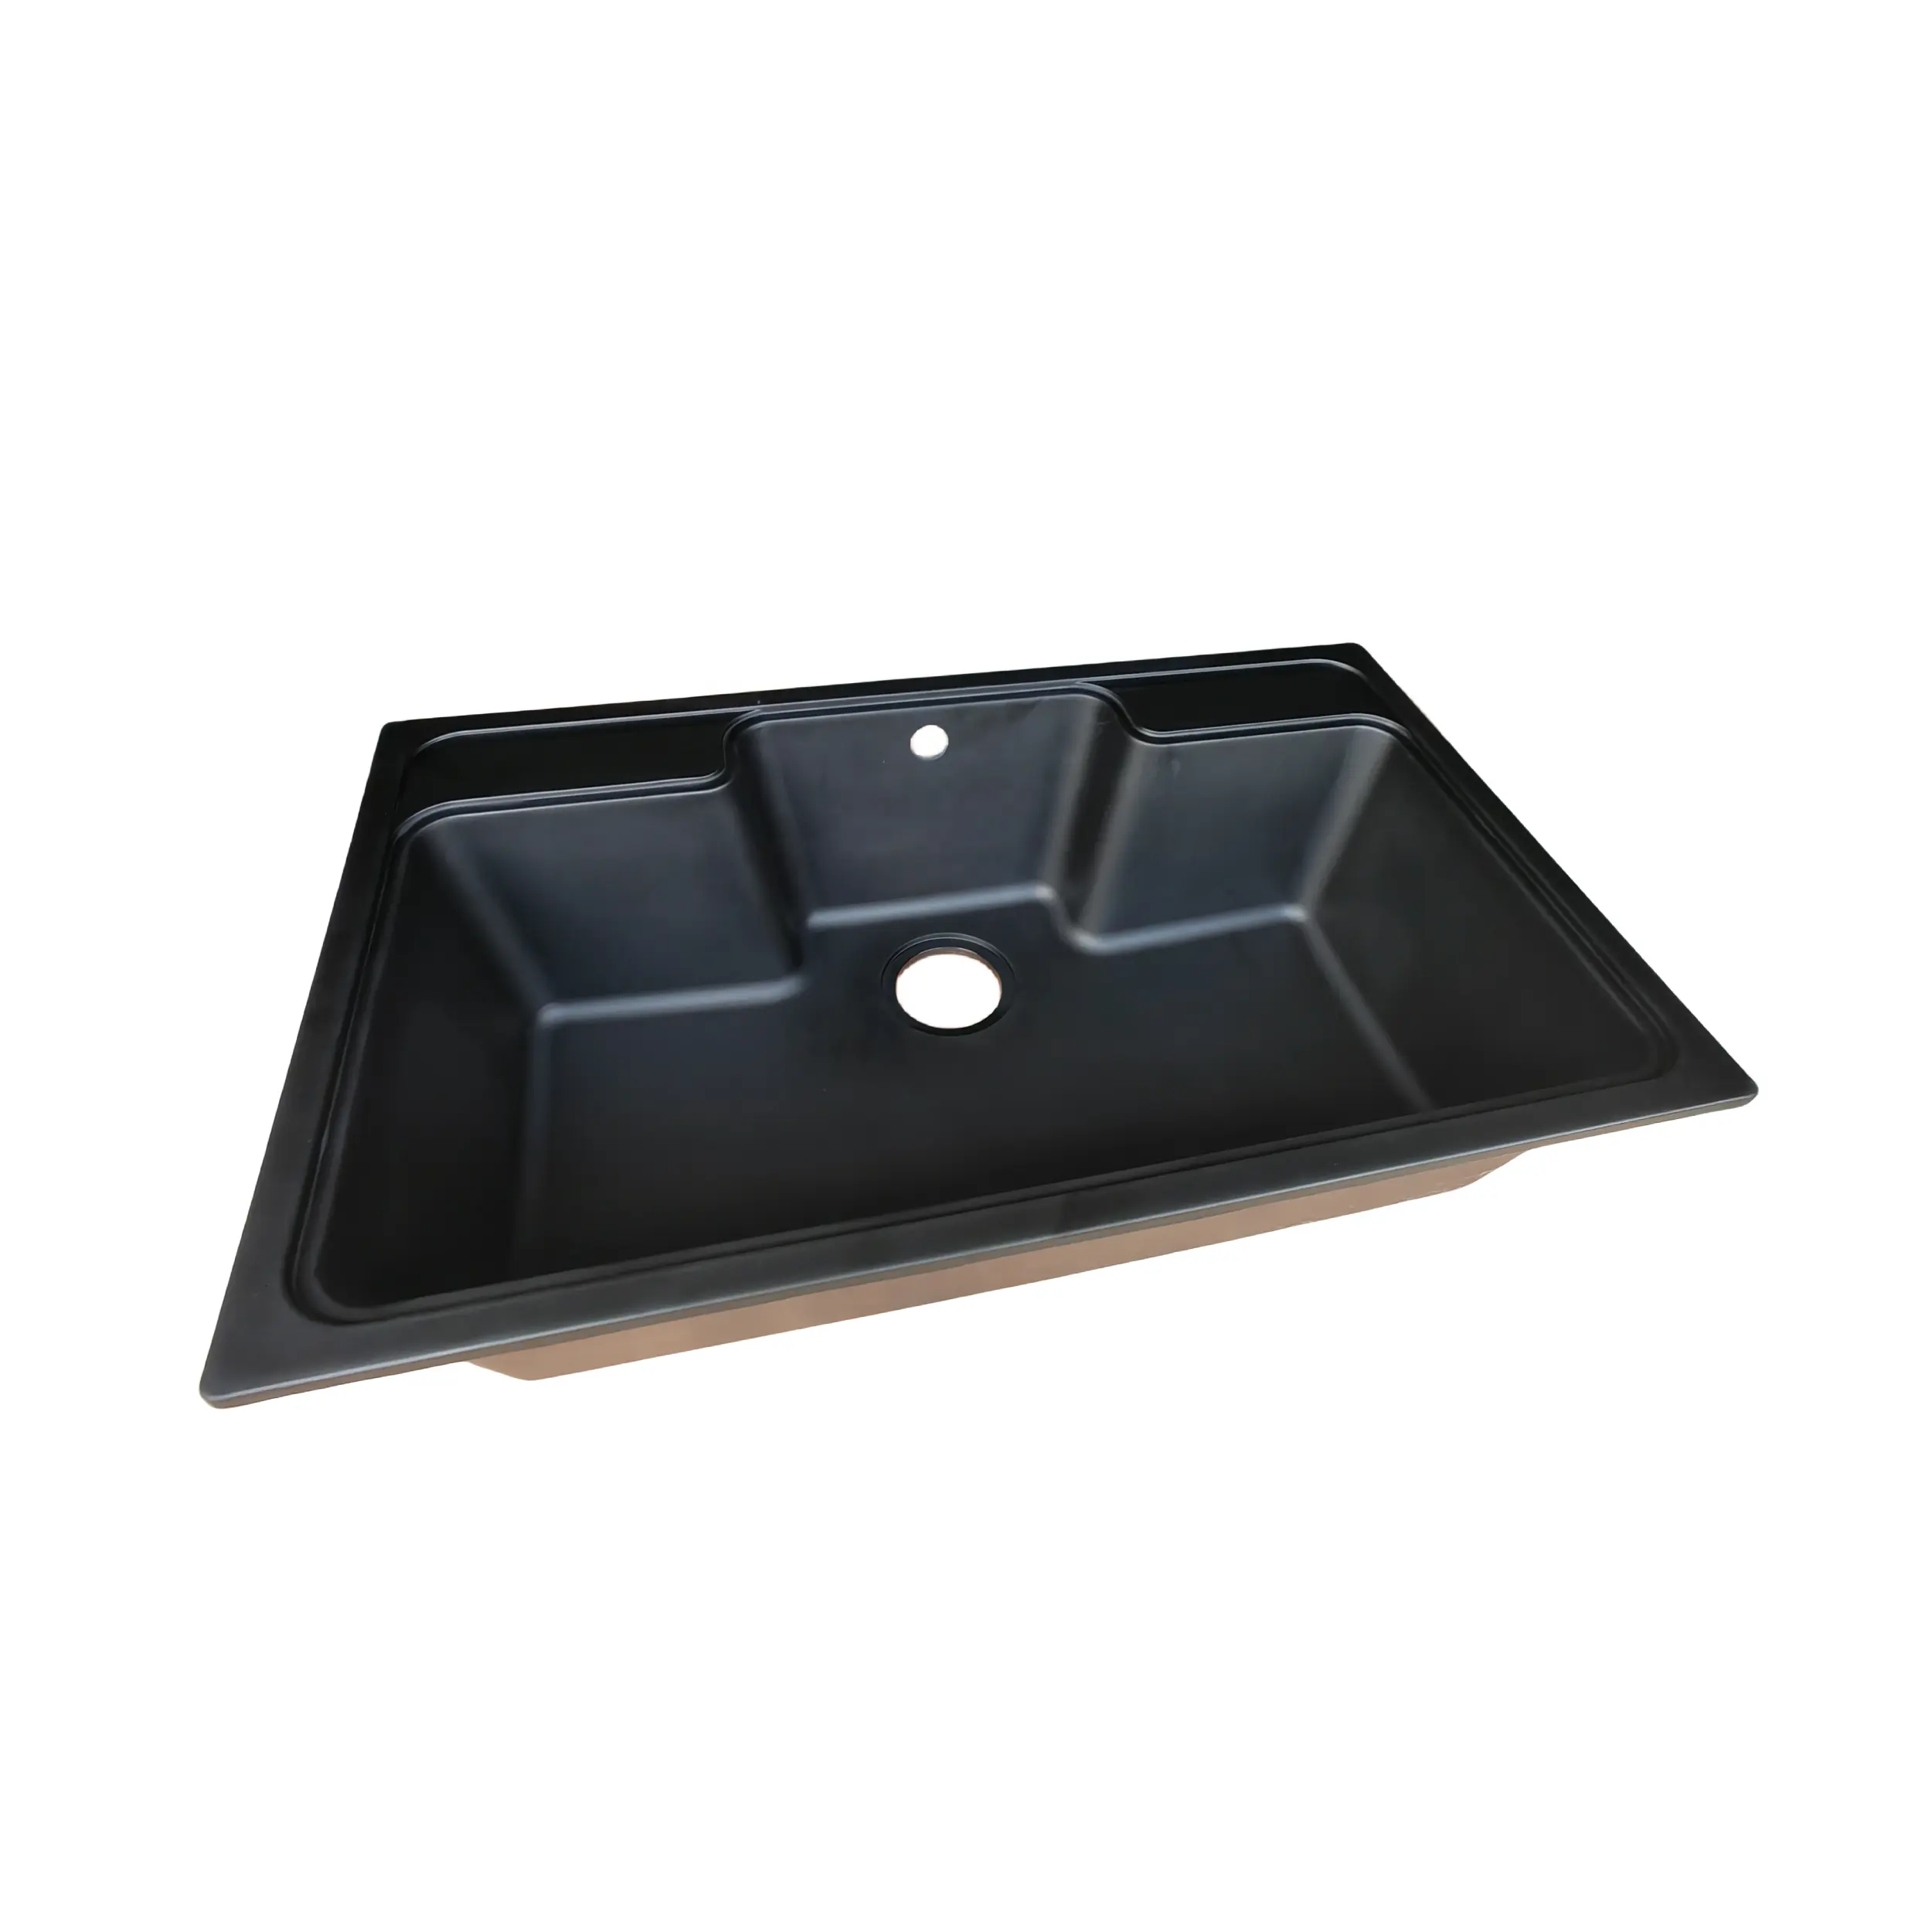 Oumeiga Bad und Küche schwarze Waschbecken billige Küchen spüle Einheiten 78*48 * cm zu verkaufen